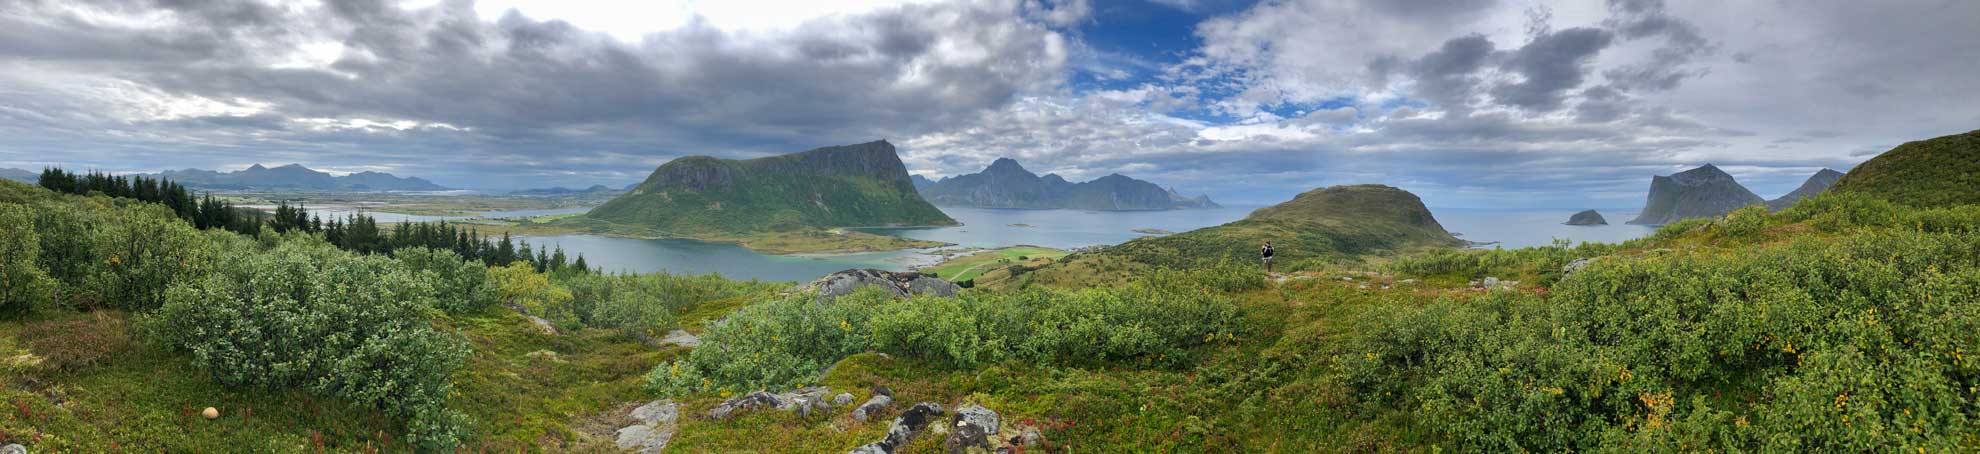 Am Ziel unserer Elternzeitreise auf den Lofoten in Norwegen.